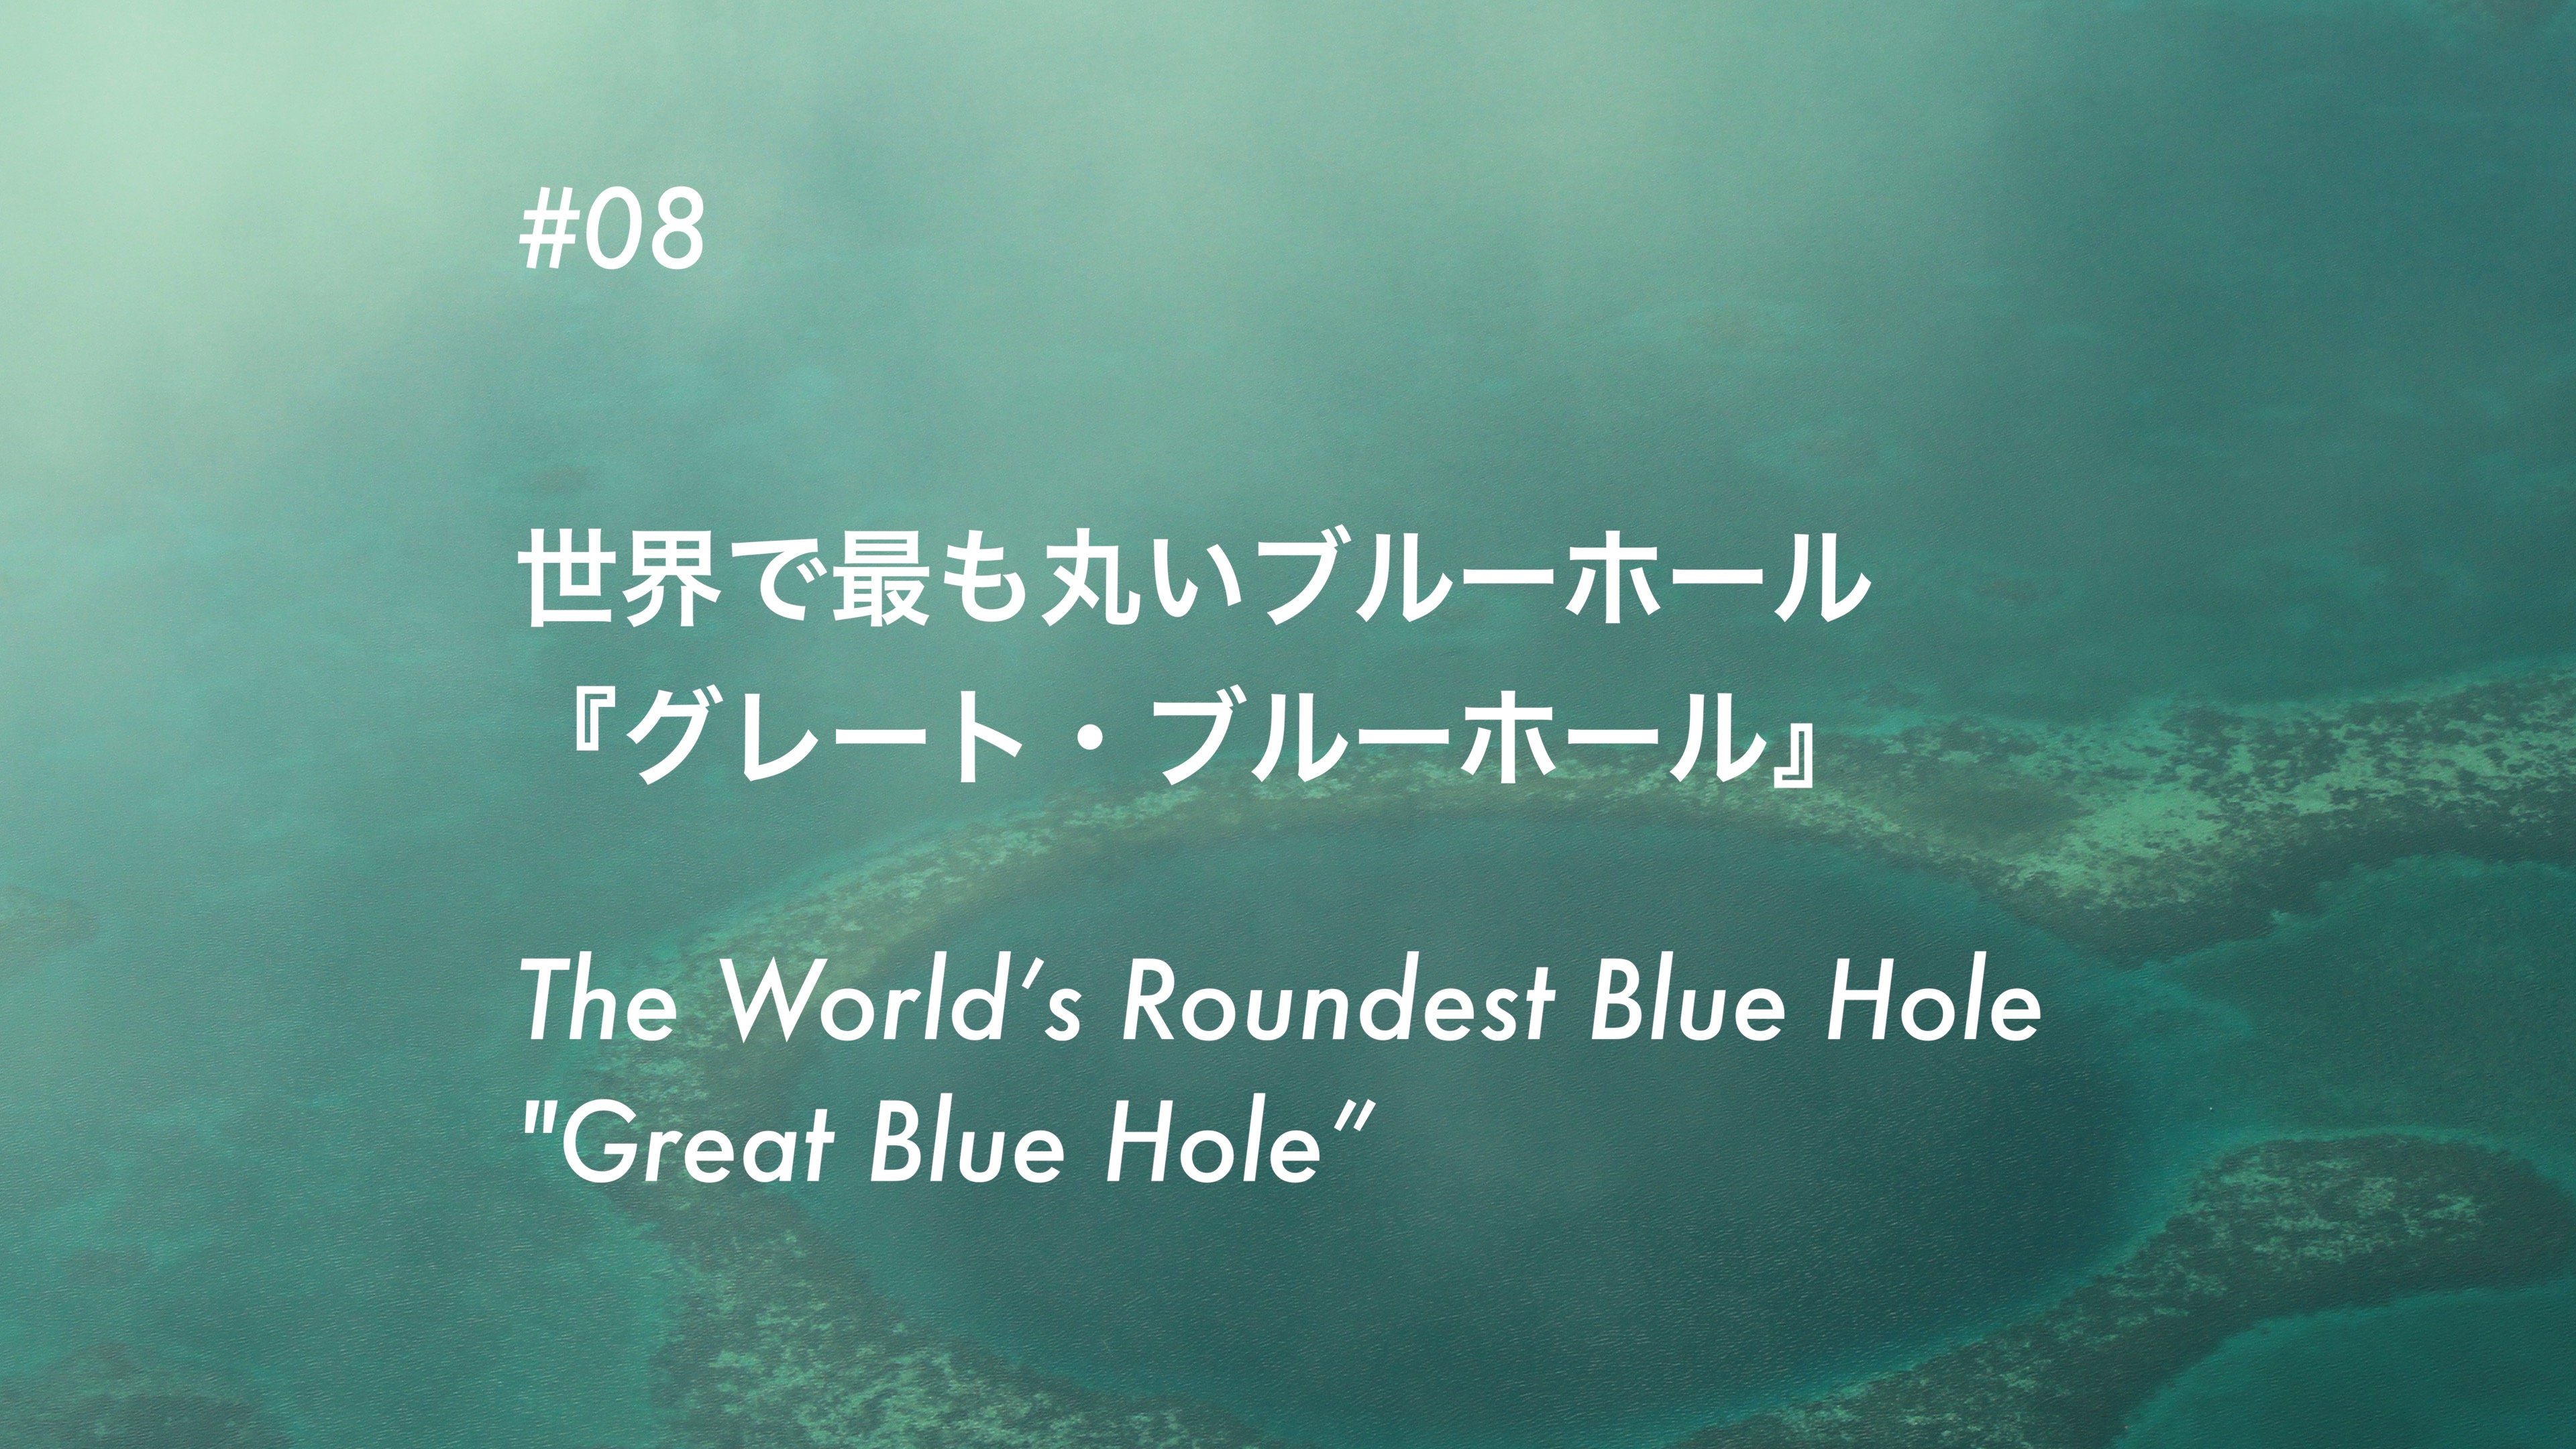 #08 世界で最も丸いブルーホール 「グラン・ブルーホール」- The World’s Roundest Blue Hole “Grand Blue Hole”